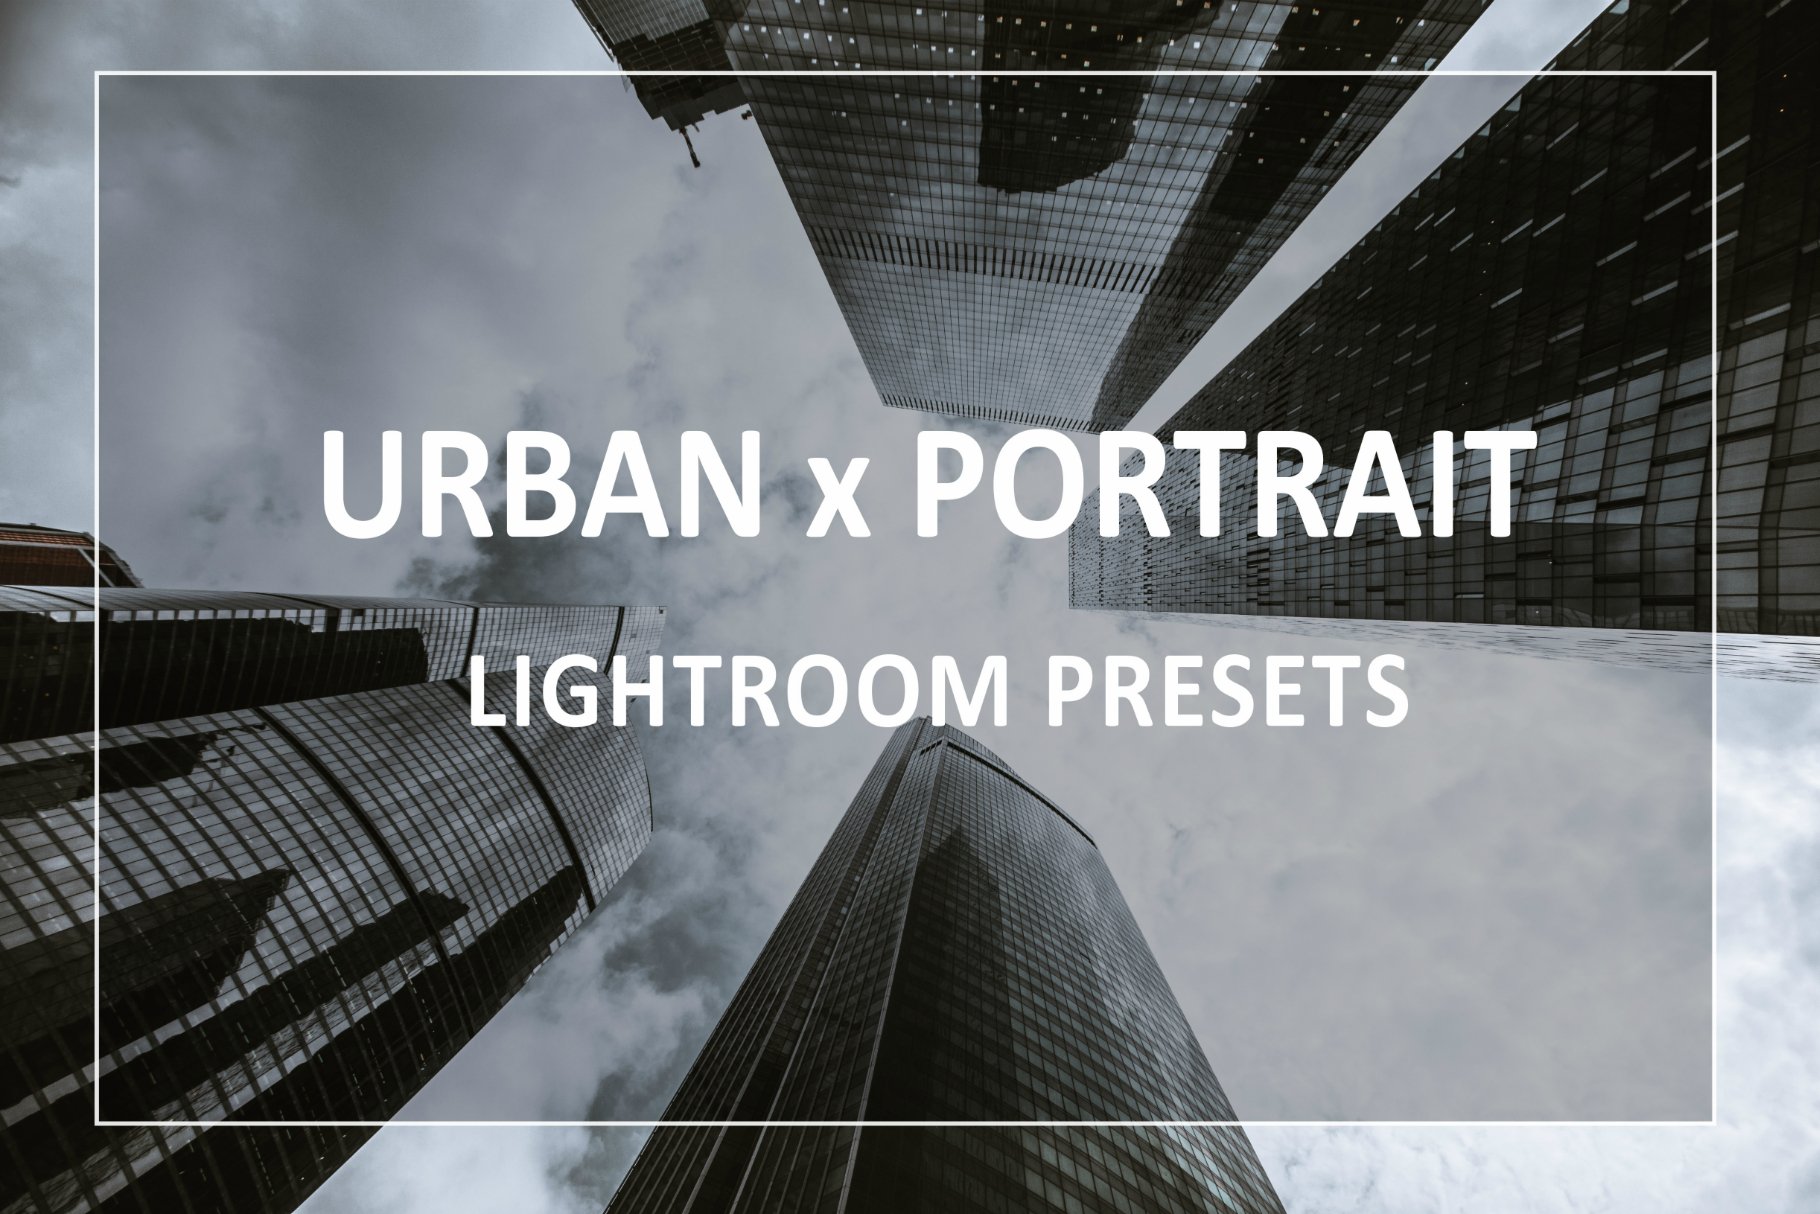 Urban & Portrait Lightroom Presetscover image.